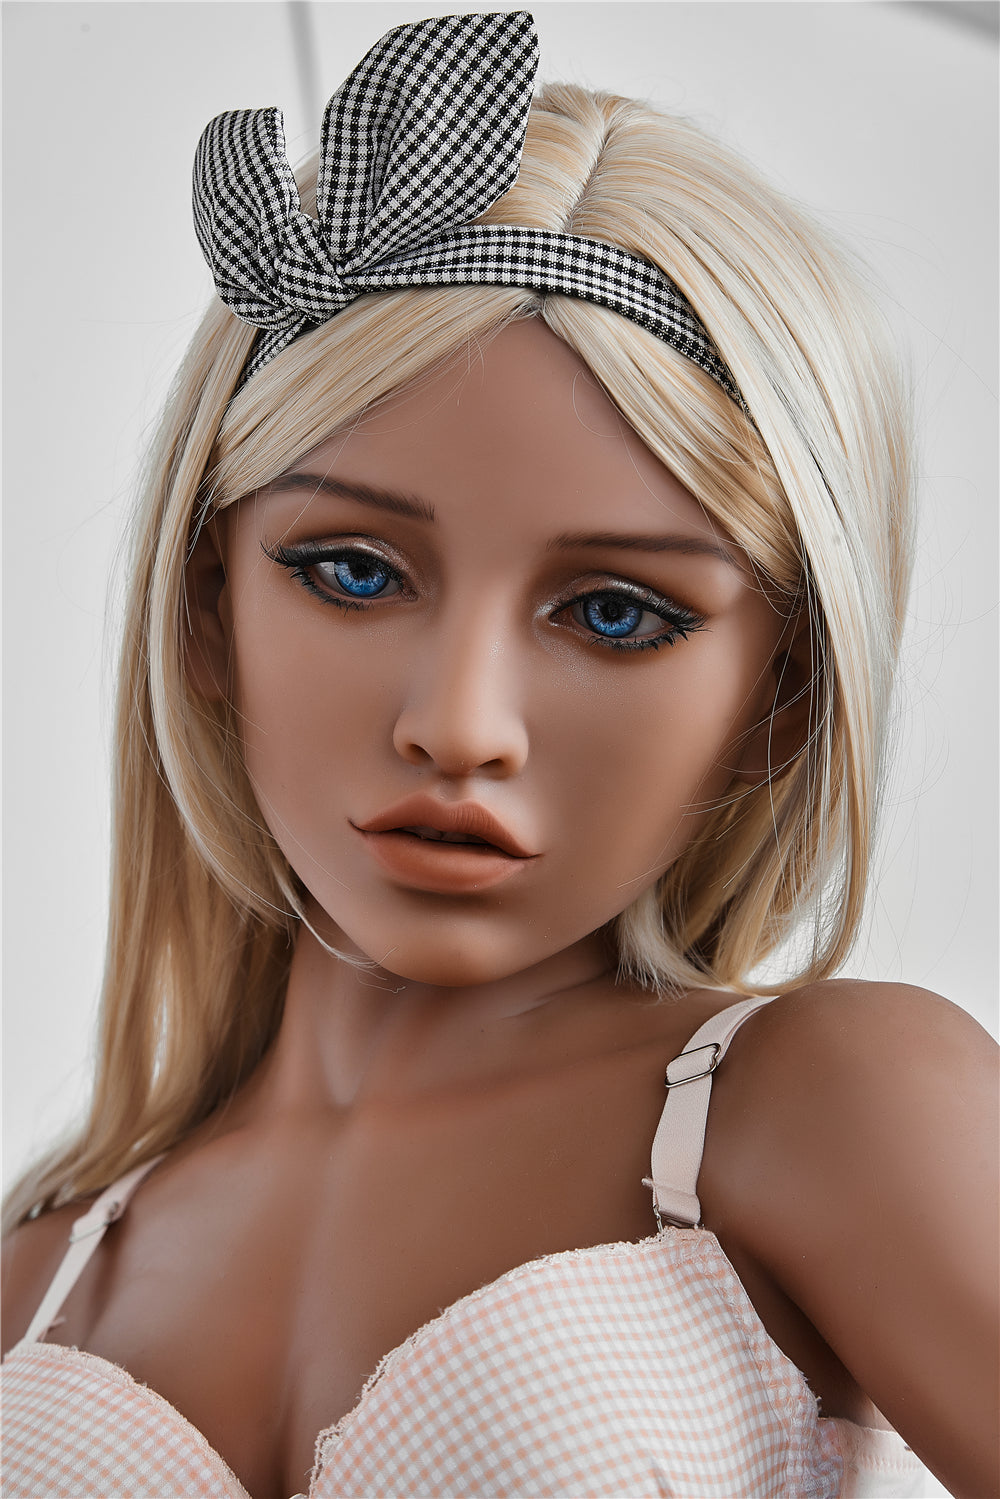 Irontech - Lifelike Sex Doll - 4ft 11in (150cm) - Scarlett - Love Dolls 4U